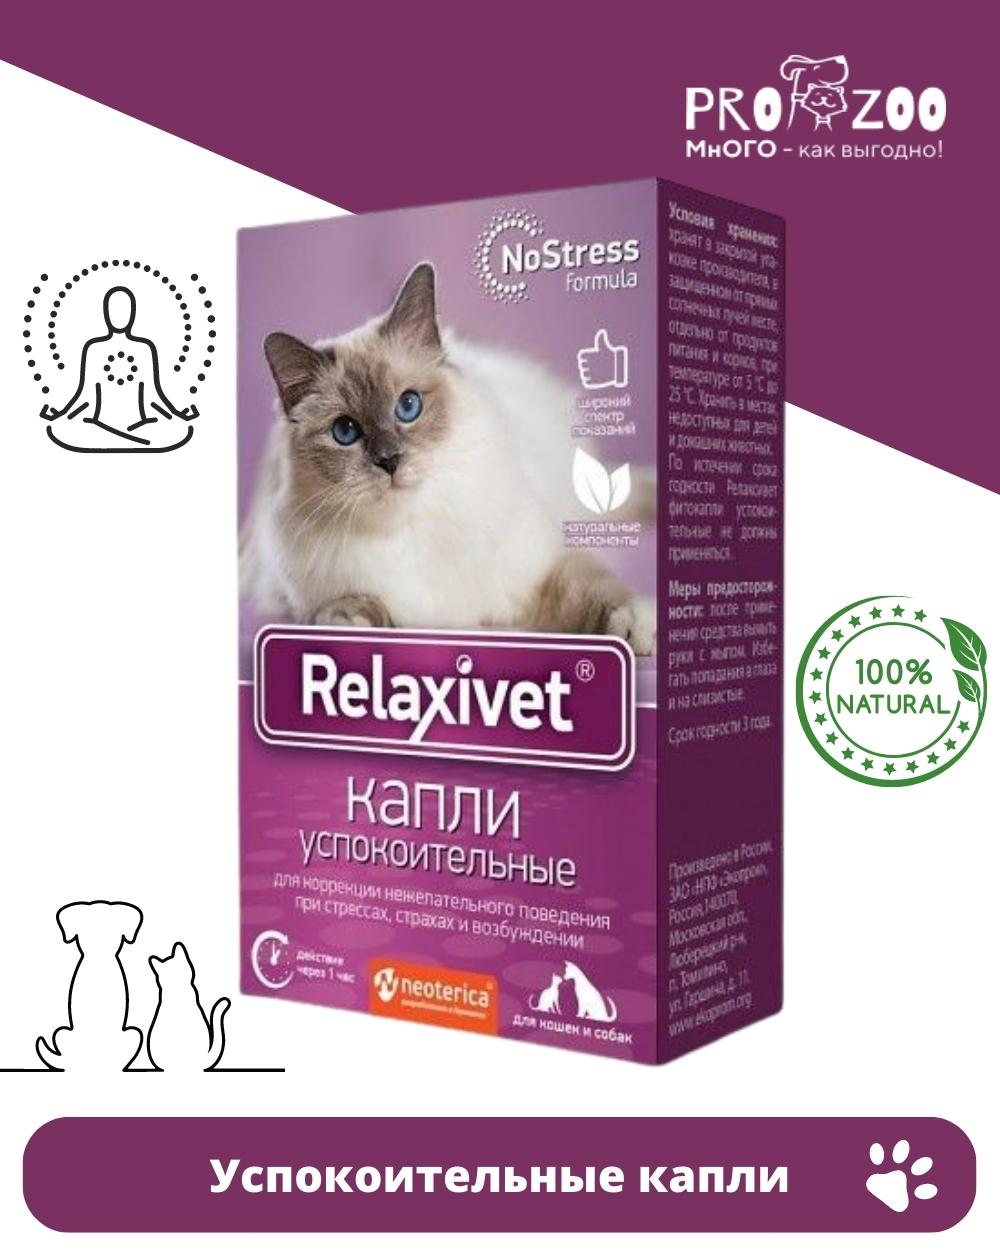 Успокоительные релаксивет. Релаксивет фитокапли успокоительные x103. Таблетки успокоительные Relaxivet x108 для кошек и собак, 10шт. Релаксивет для кошек цена.